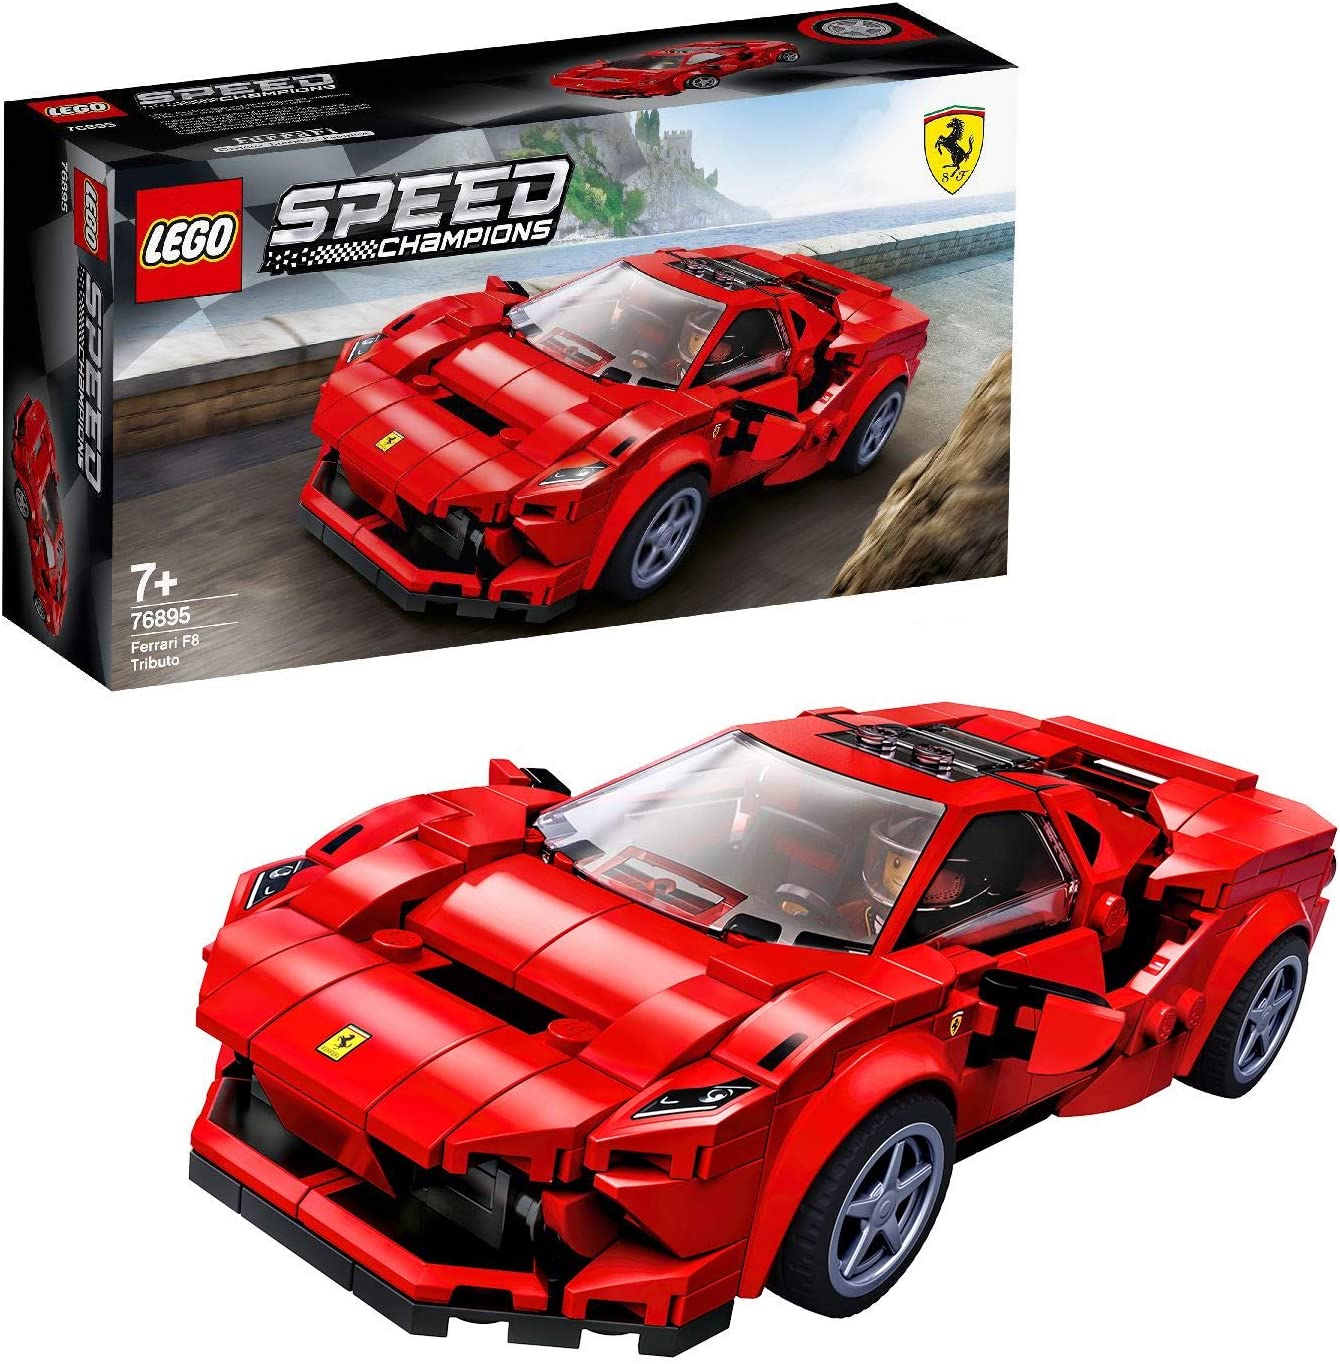 LEGO Speed Champions Ferrari F8 Tributo per Giocare, Costruire e Collezionare lo Storico Modello della Ferrari, Set di Costruzioni per Bambini, Collezionisti e Amanti dei Motori, 76895